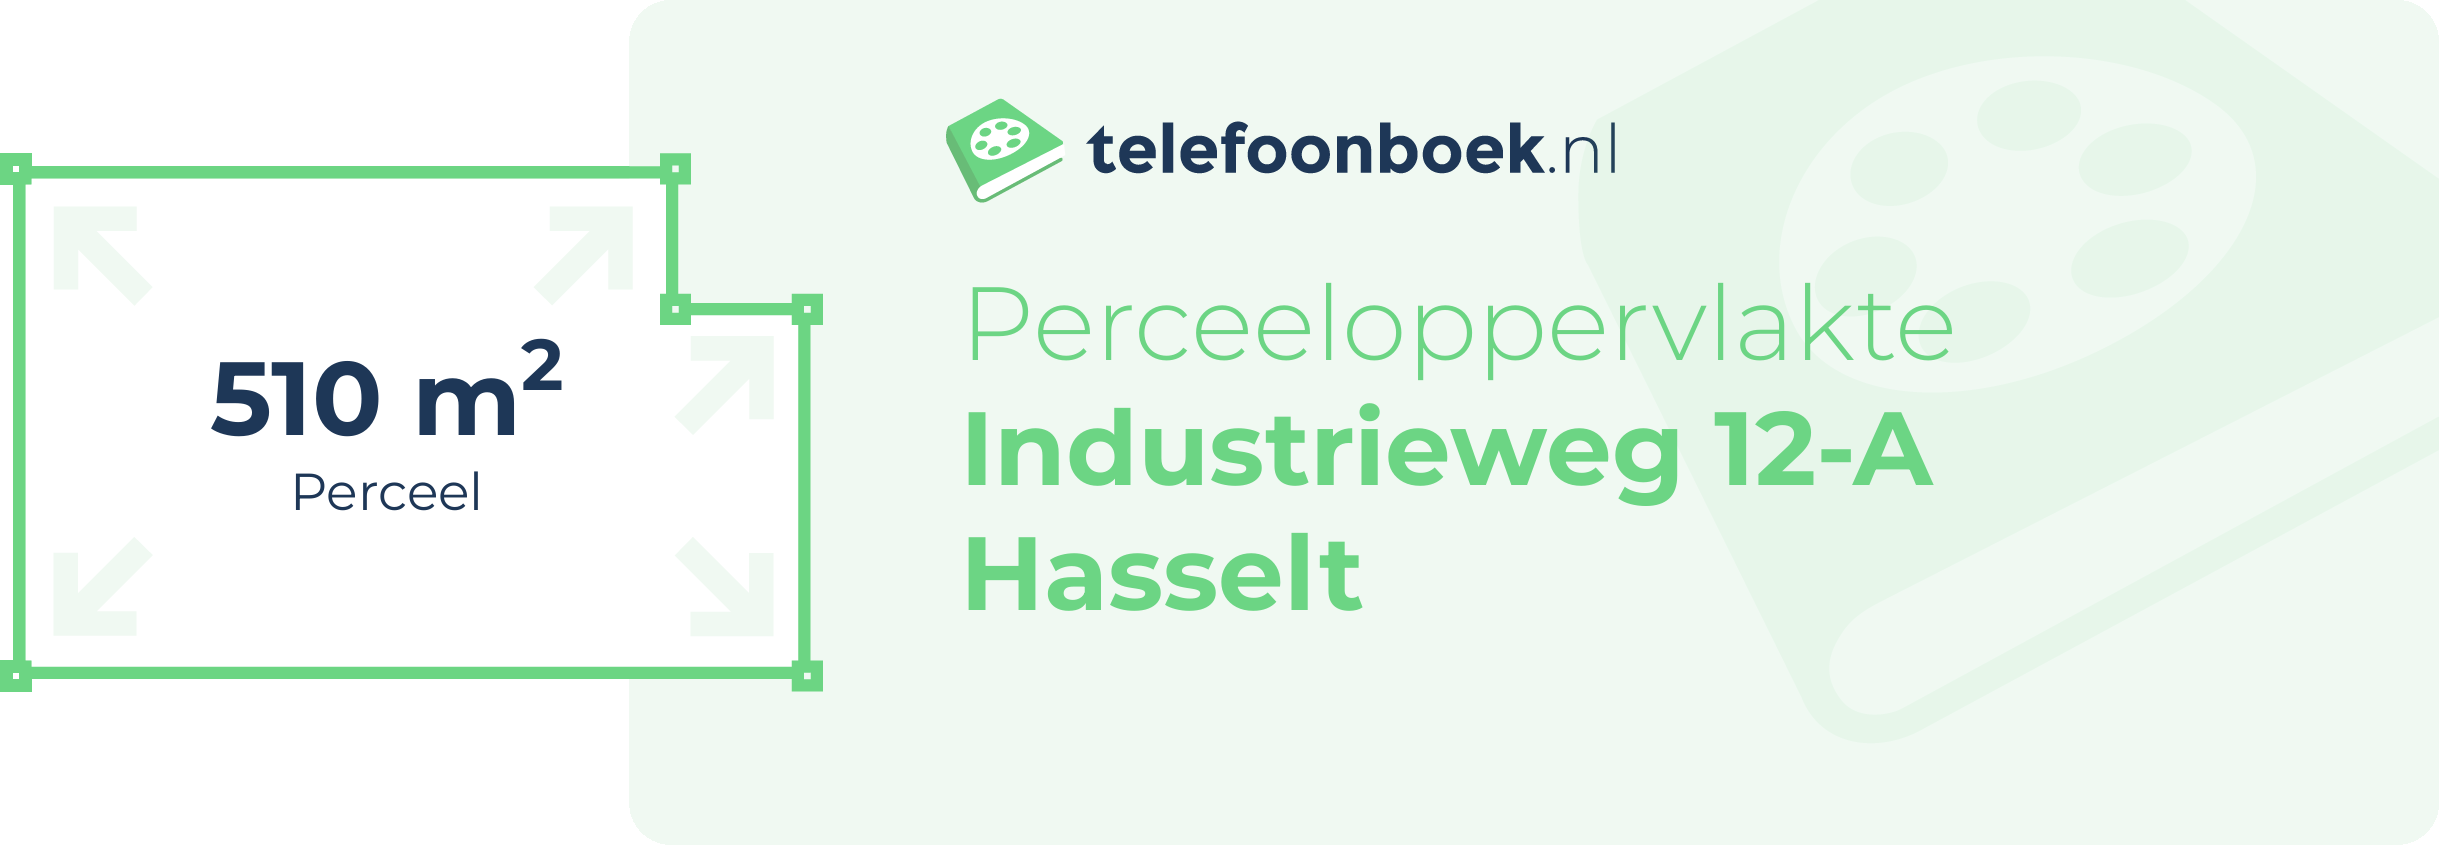 Perceeloppervlakte Industrieweg 12-A Hasselt